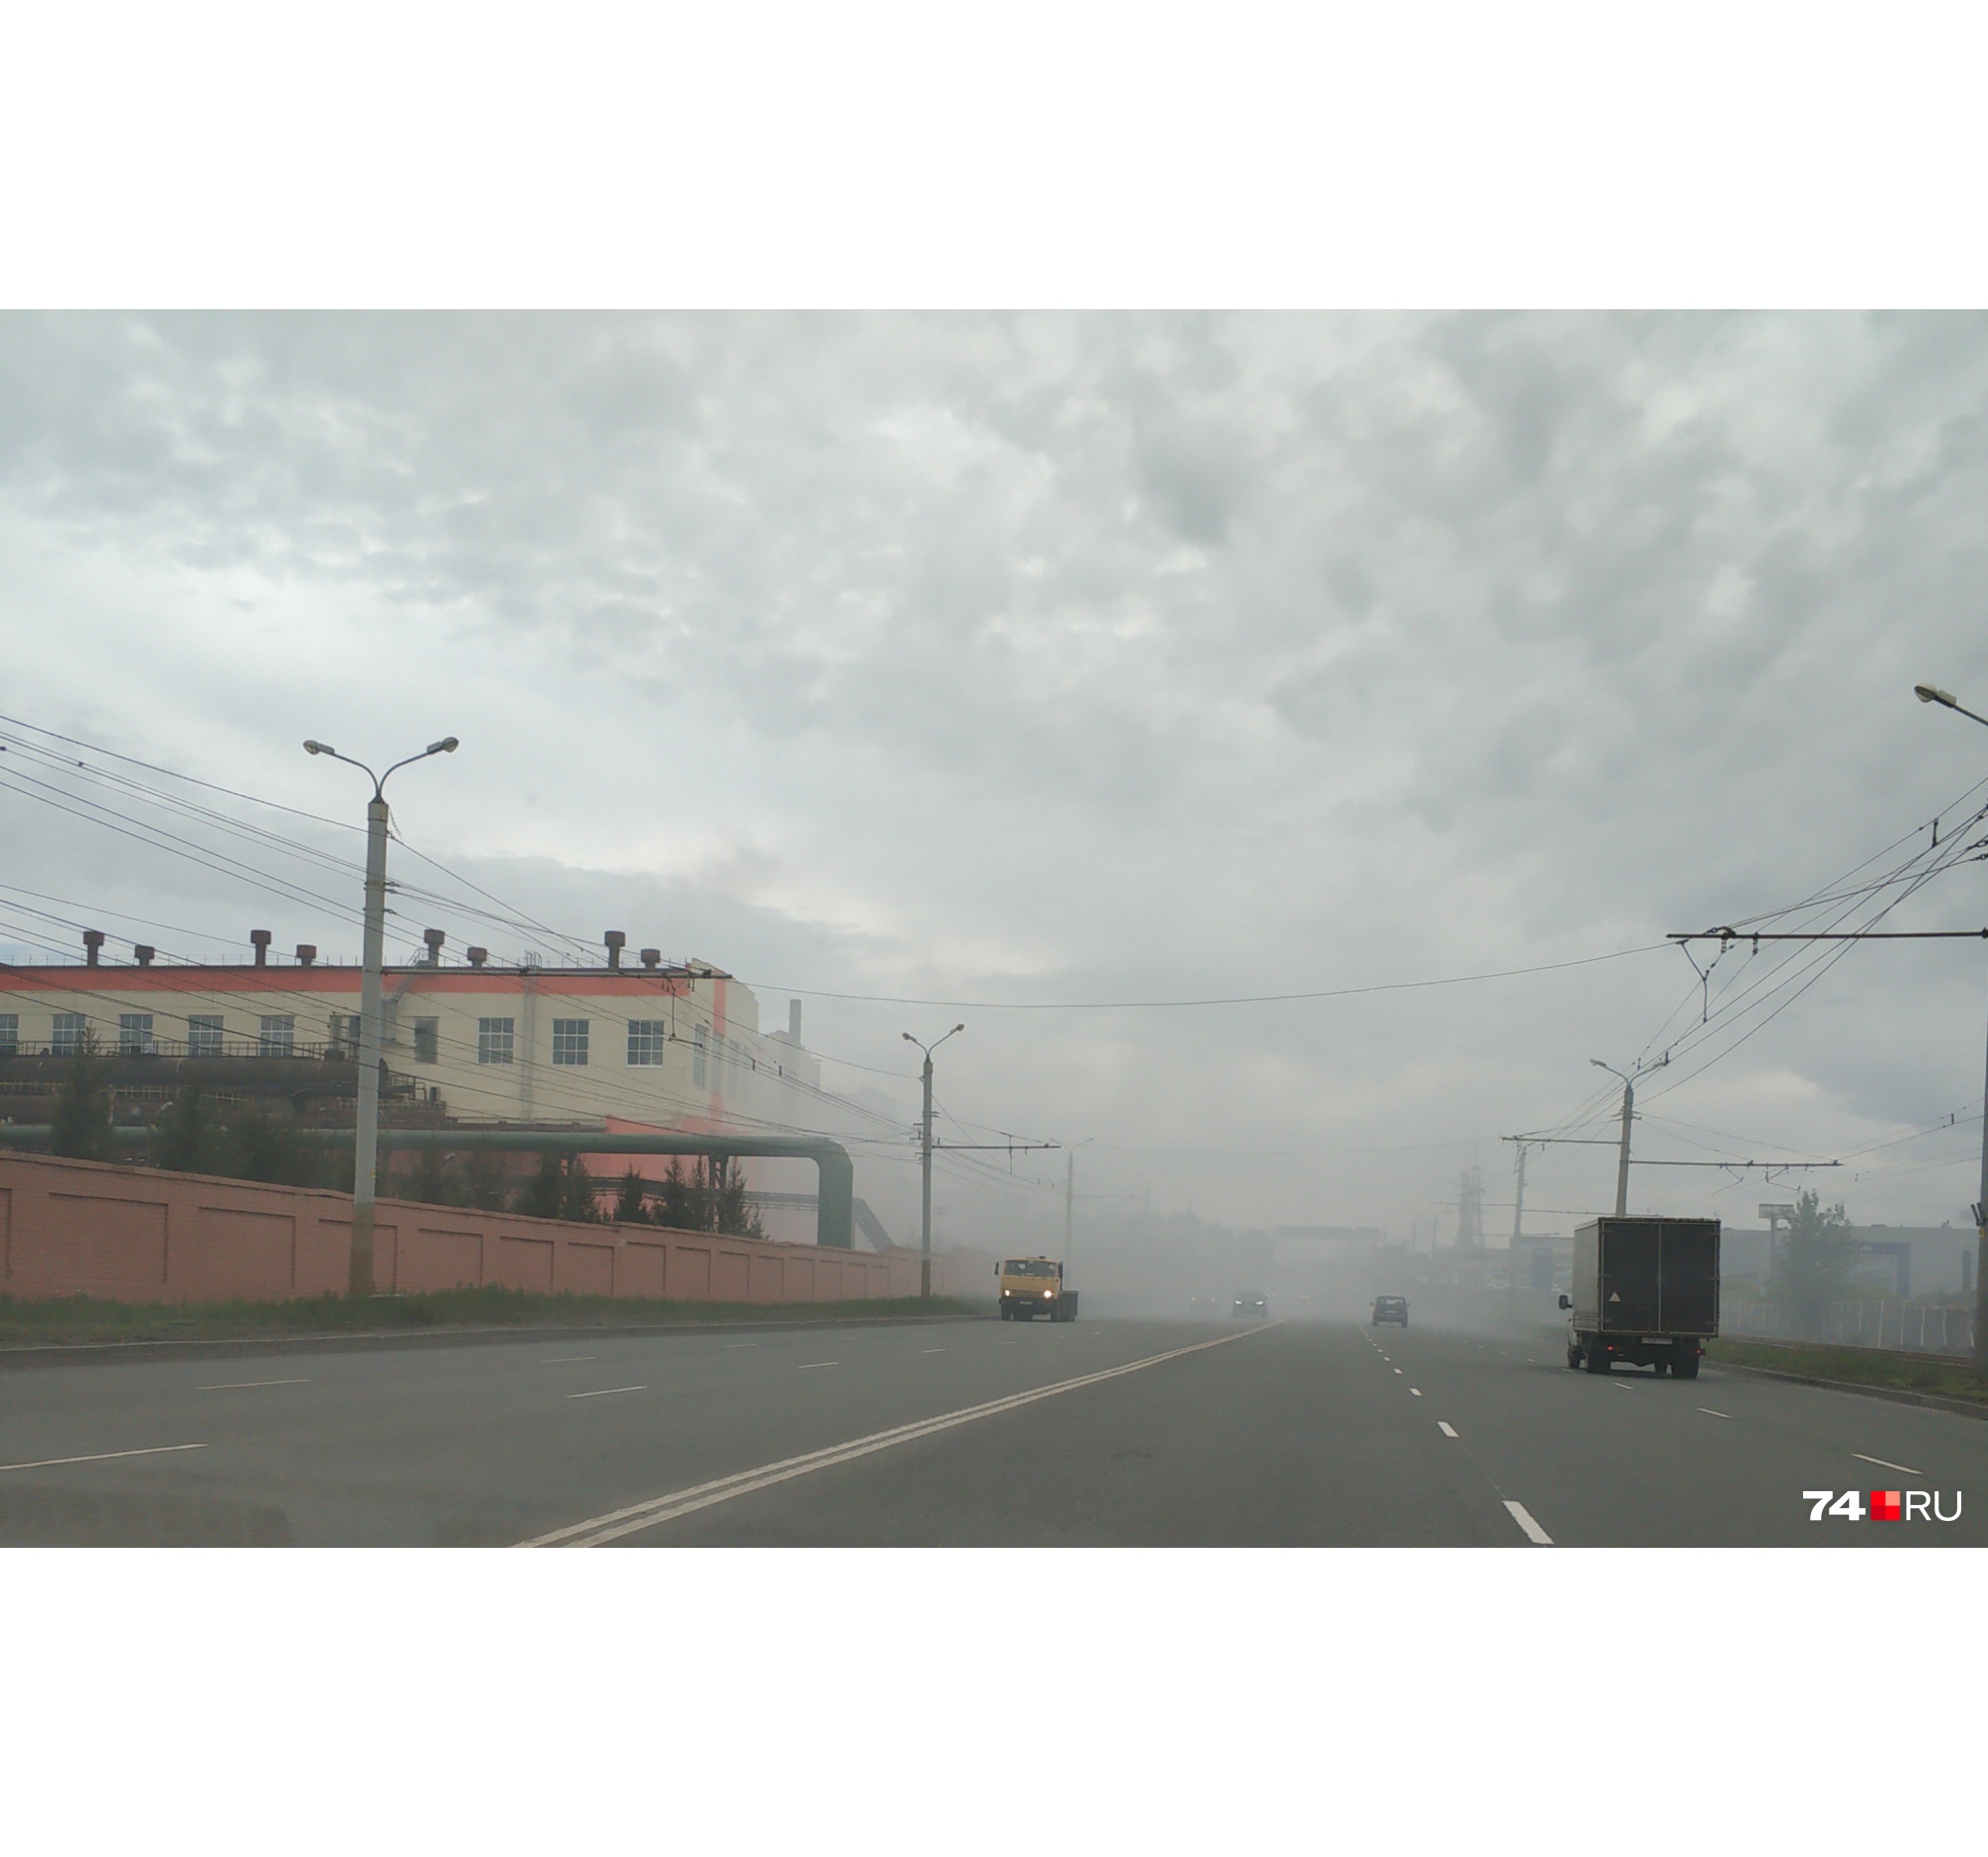 «Сбросили лишнее»: дорогу возле цинкового завода в Челябинске заволокло серым туманом